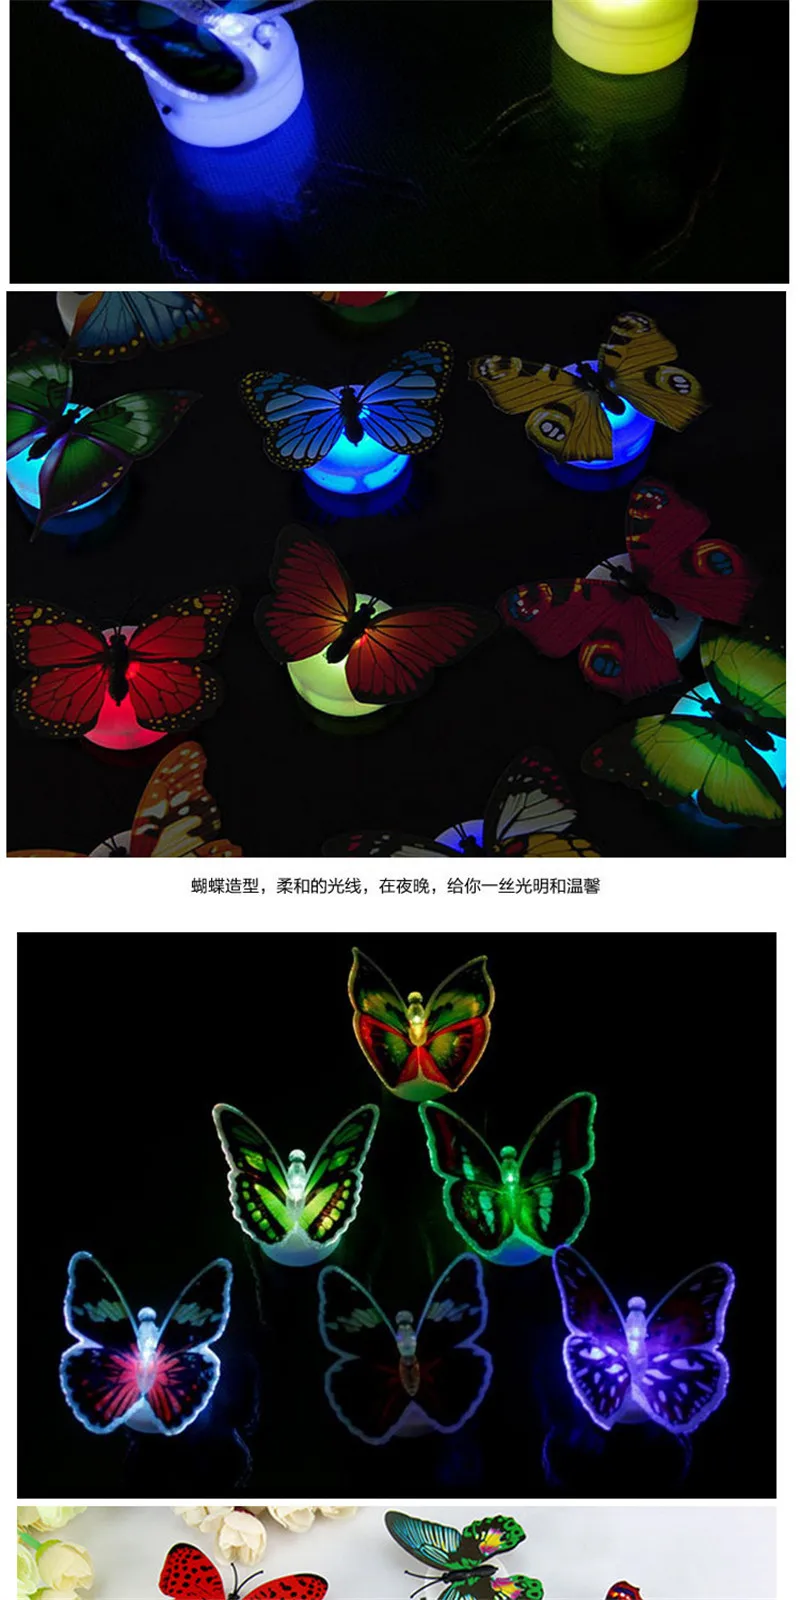 Светильник-бабочка, детские игрушки, красочный красивый светодиодный светильник для детской комнаты, декоративный настенный светильник, креативные вечерние игрушки